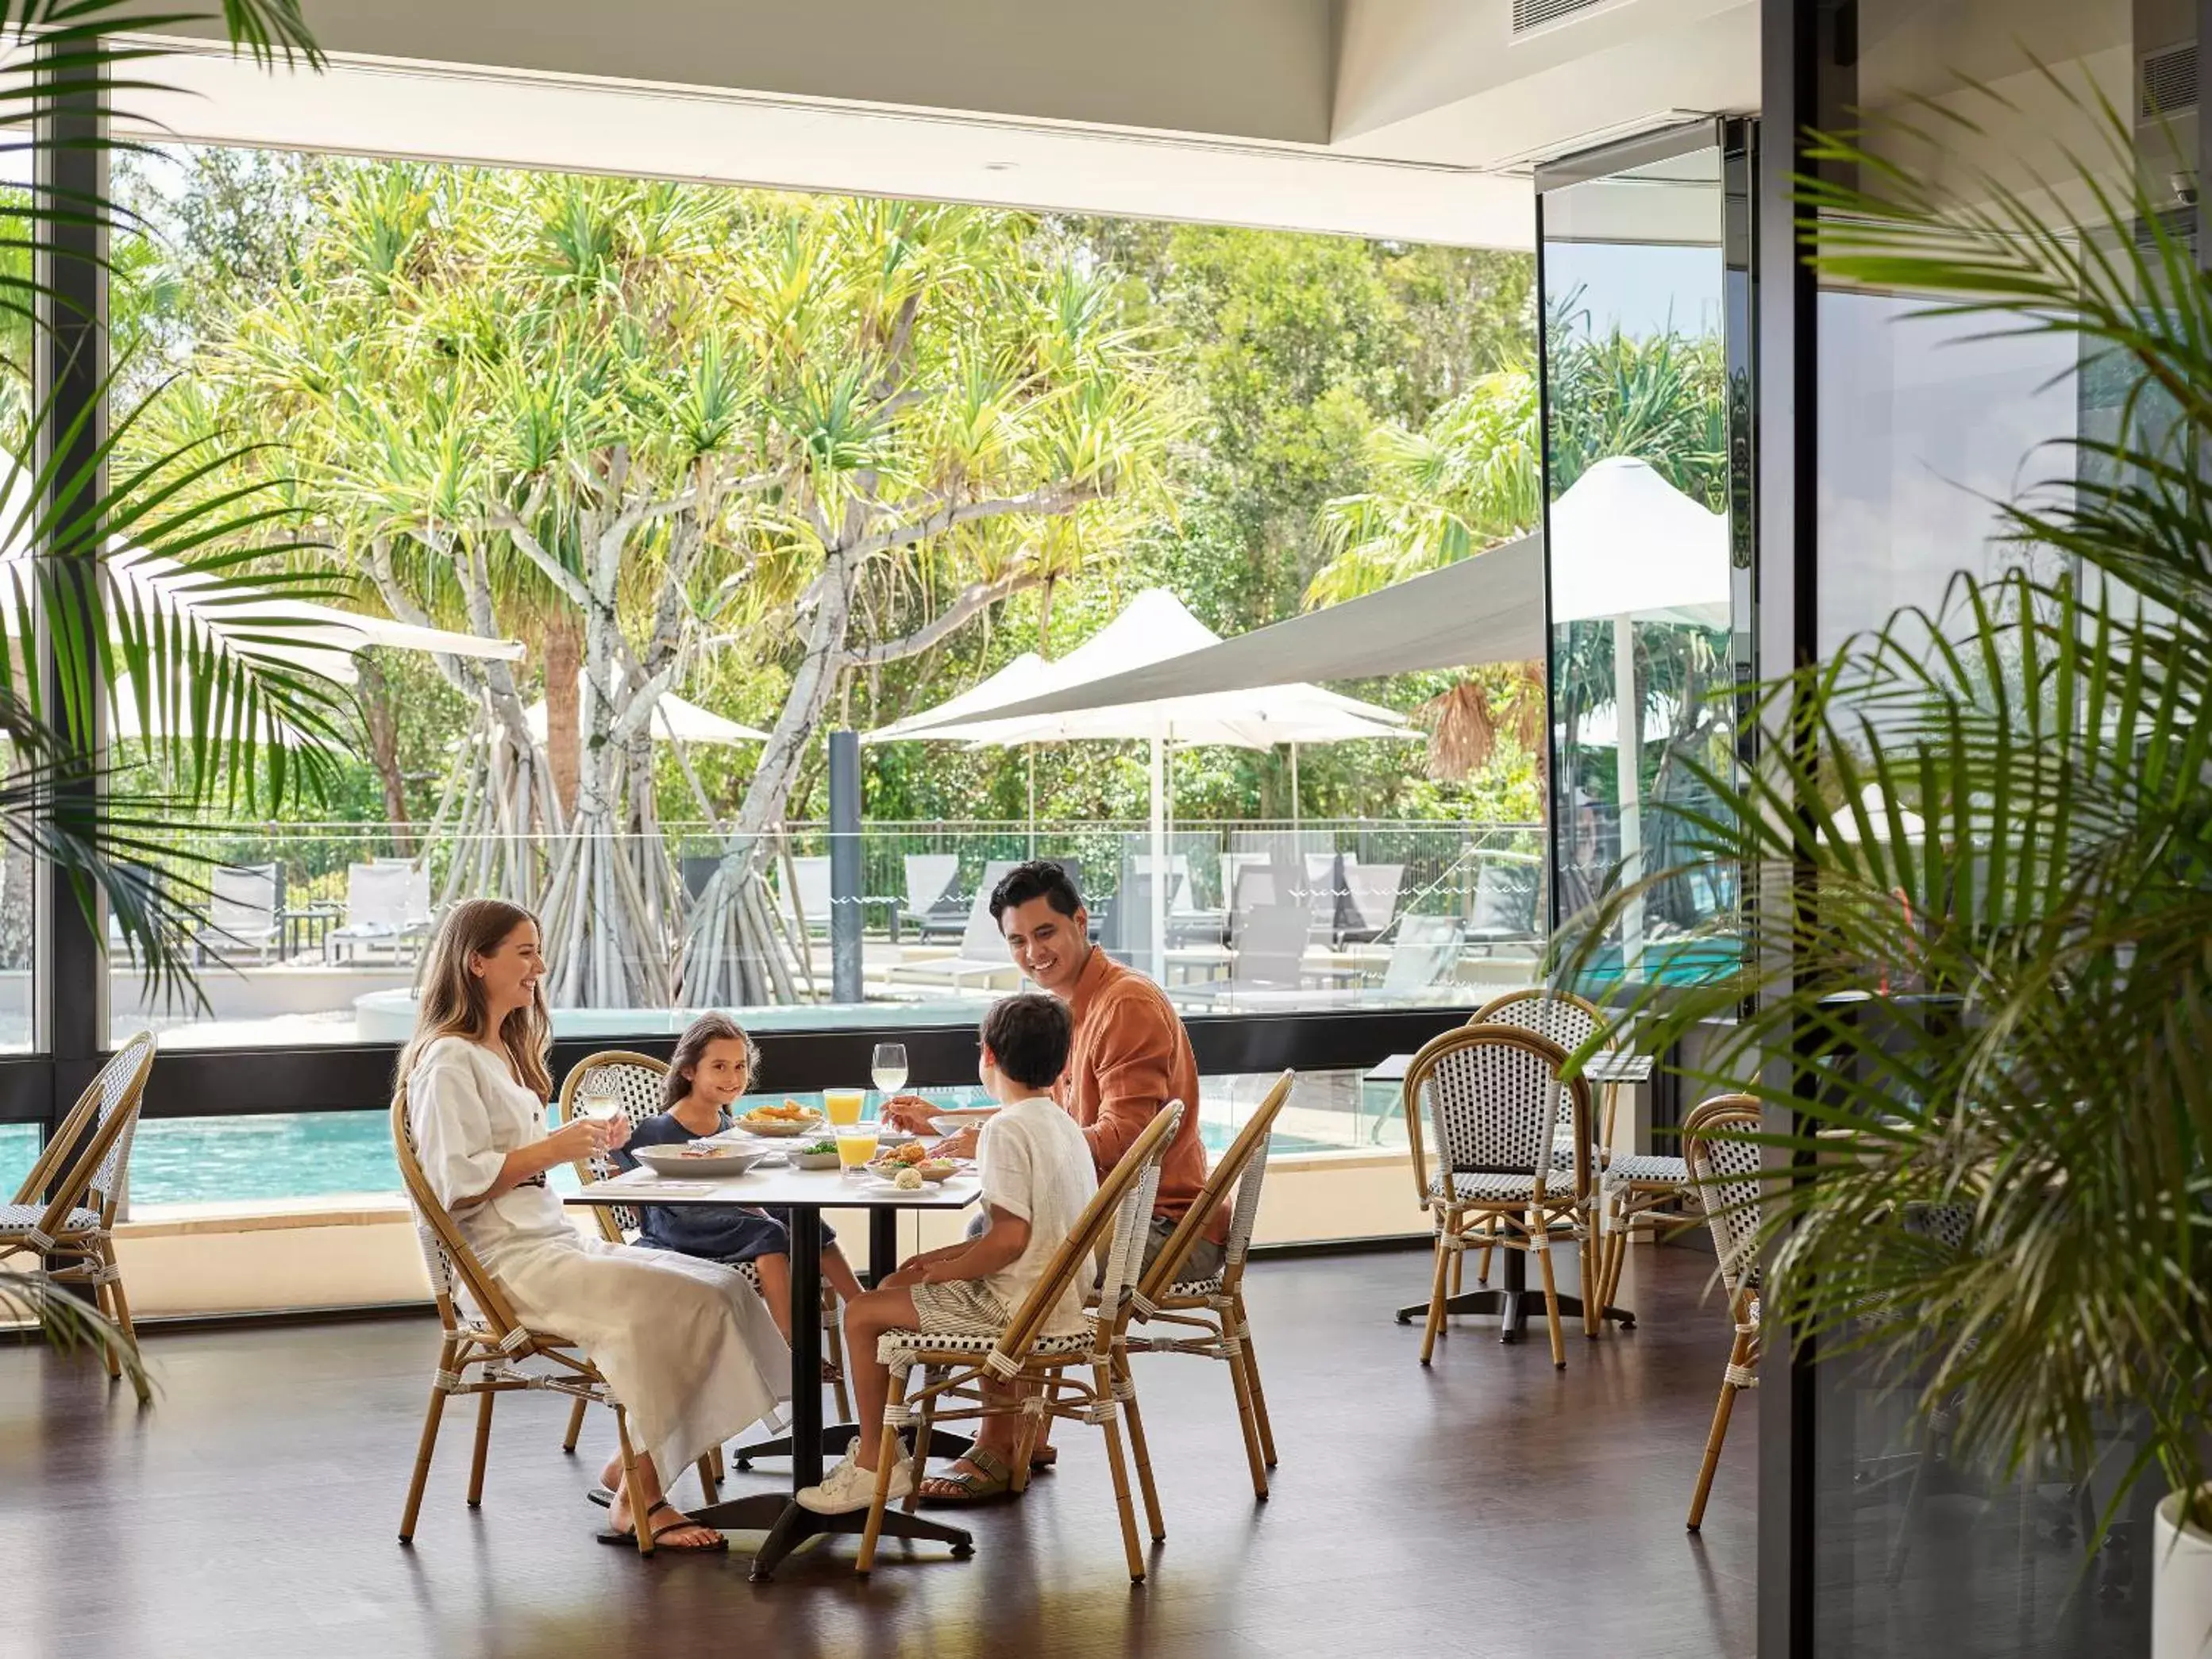 Restaurant/Places to Eat in RACV Noosa Resort